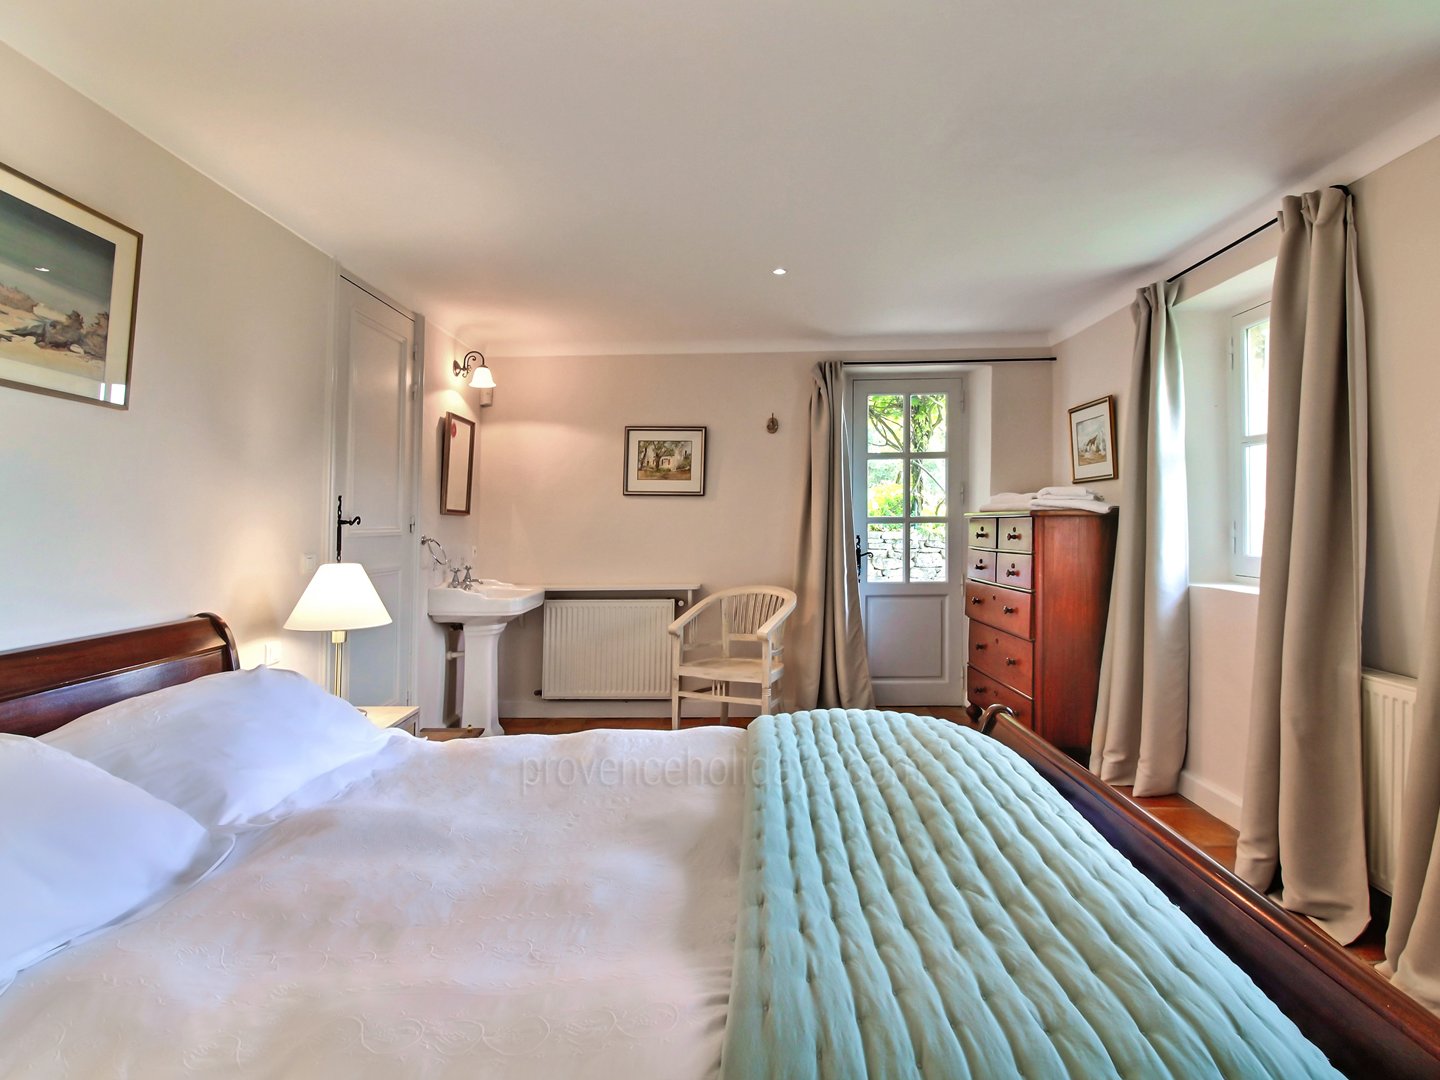 31 - Le Mas de Bonnieux: Villa: Bedroom